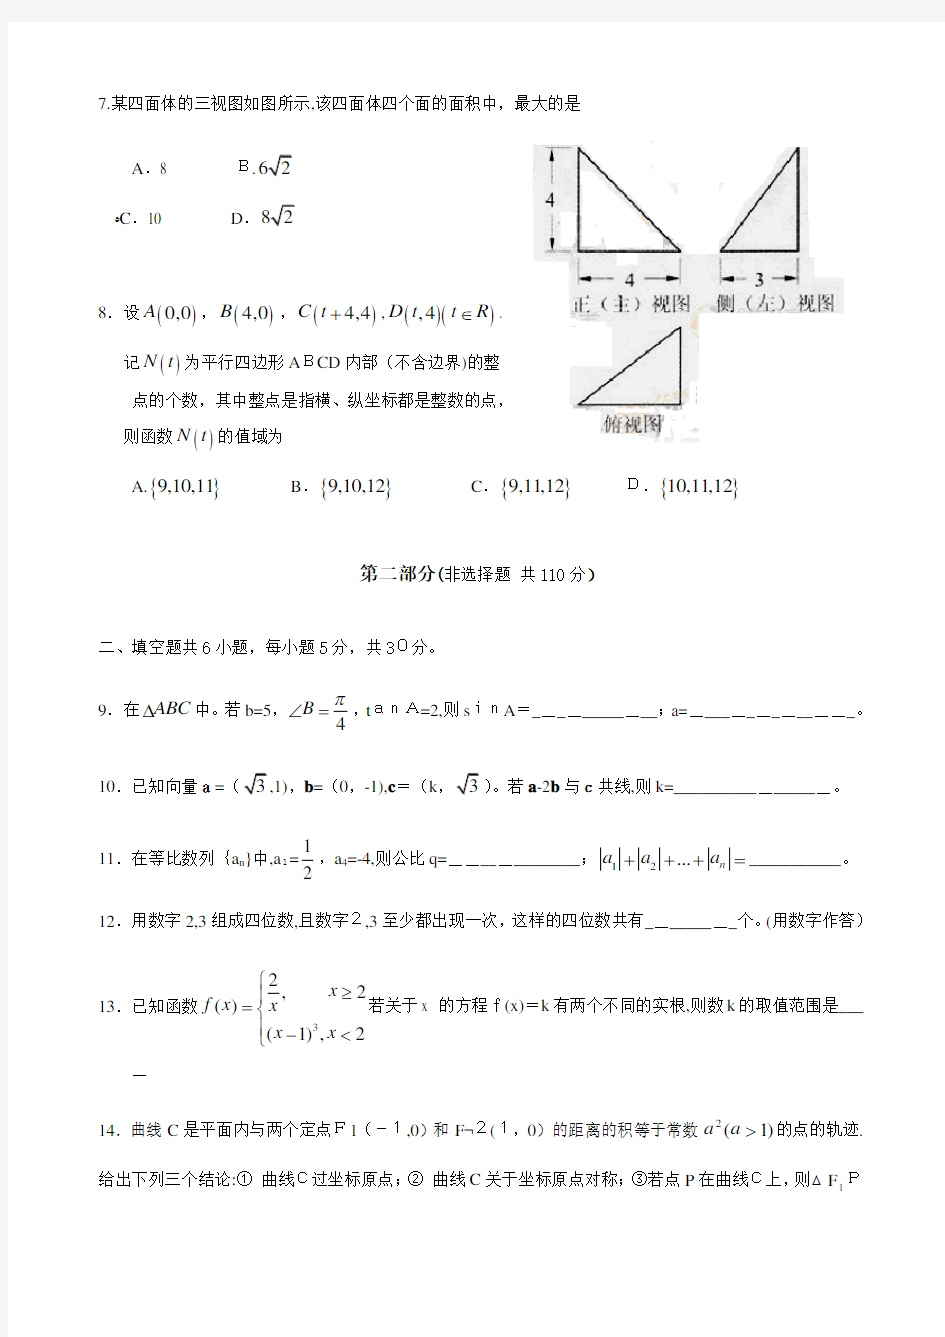 2011年北京高考数学理科试题及标准答案